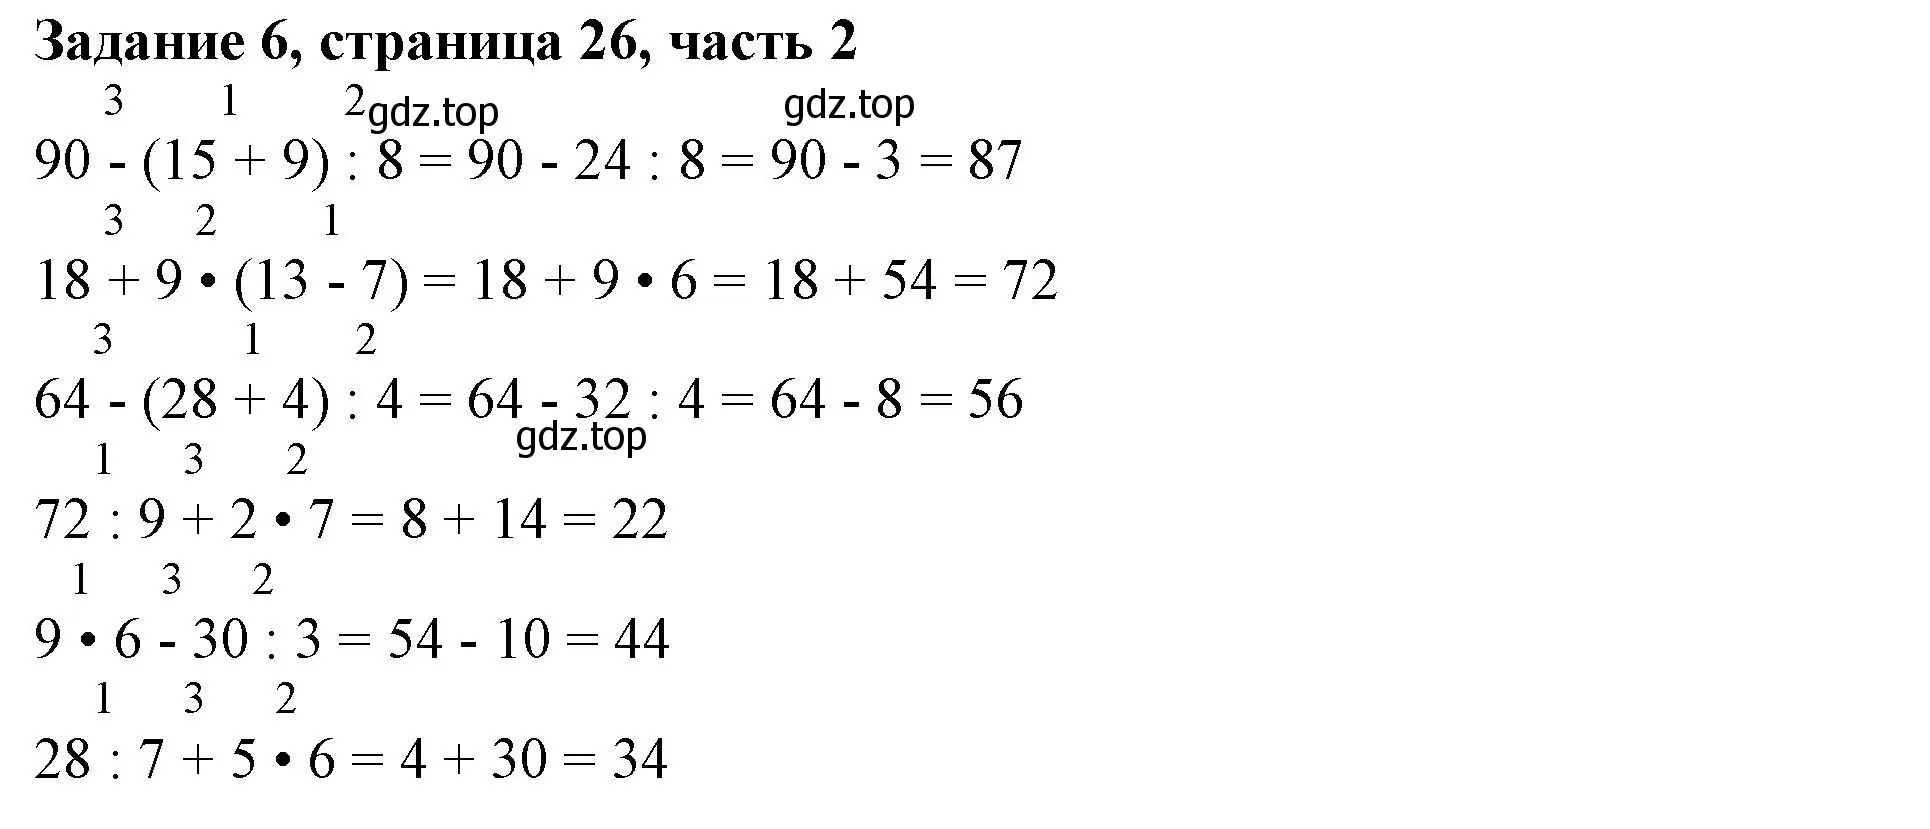 Решение номер 6 (страница 26) гдз по математике 3 класс Моро, Бантова, учебник 2 часть